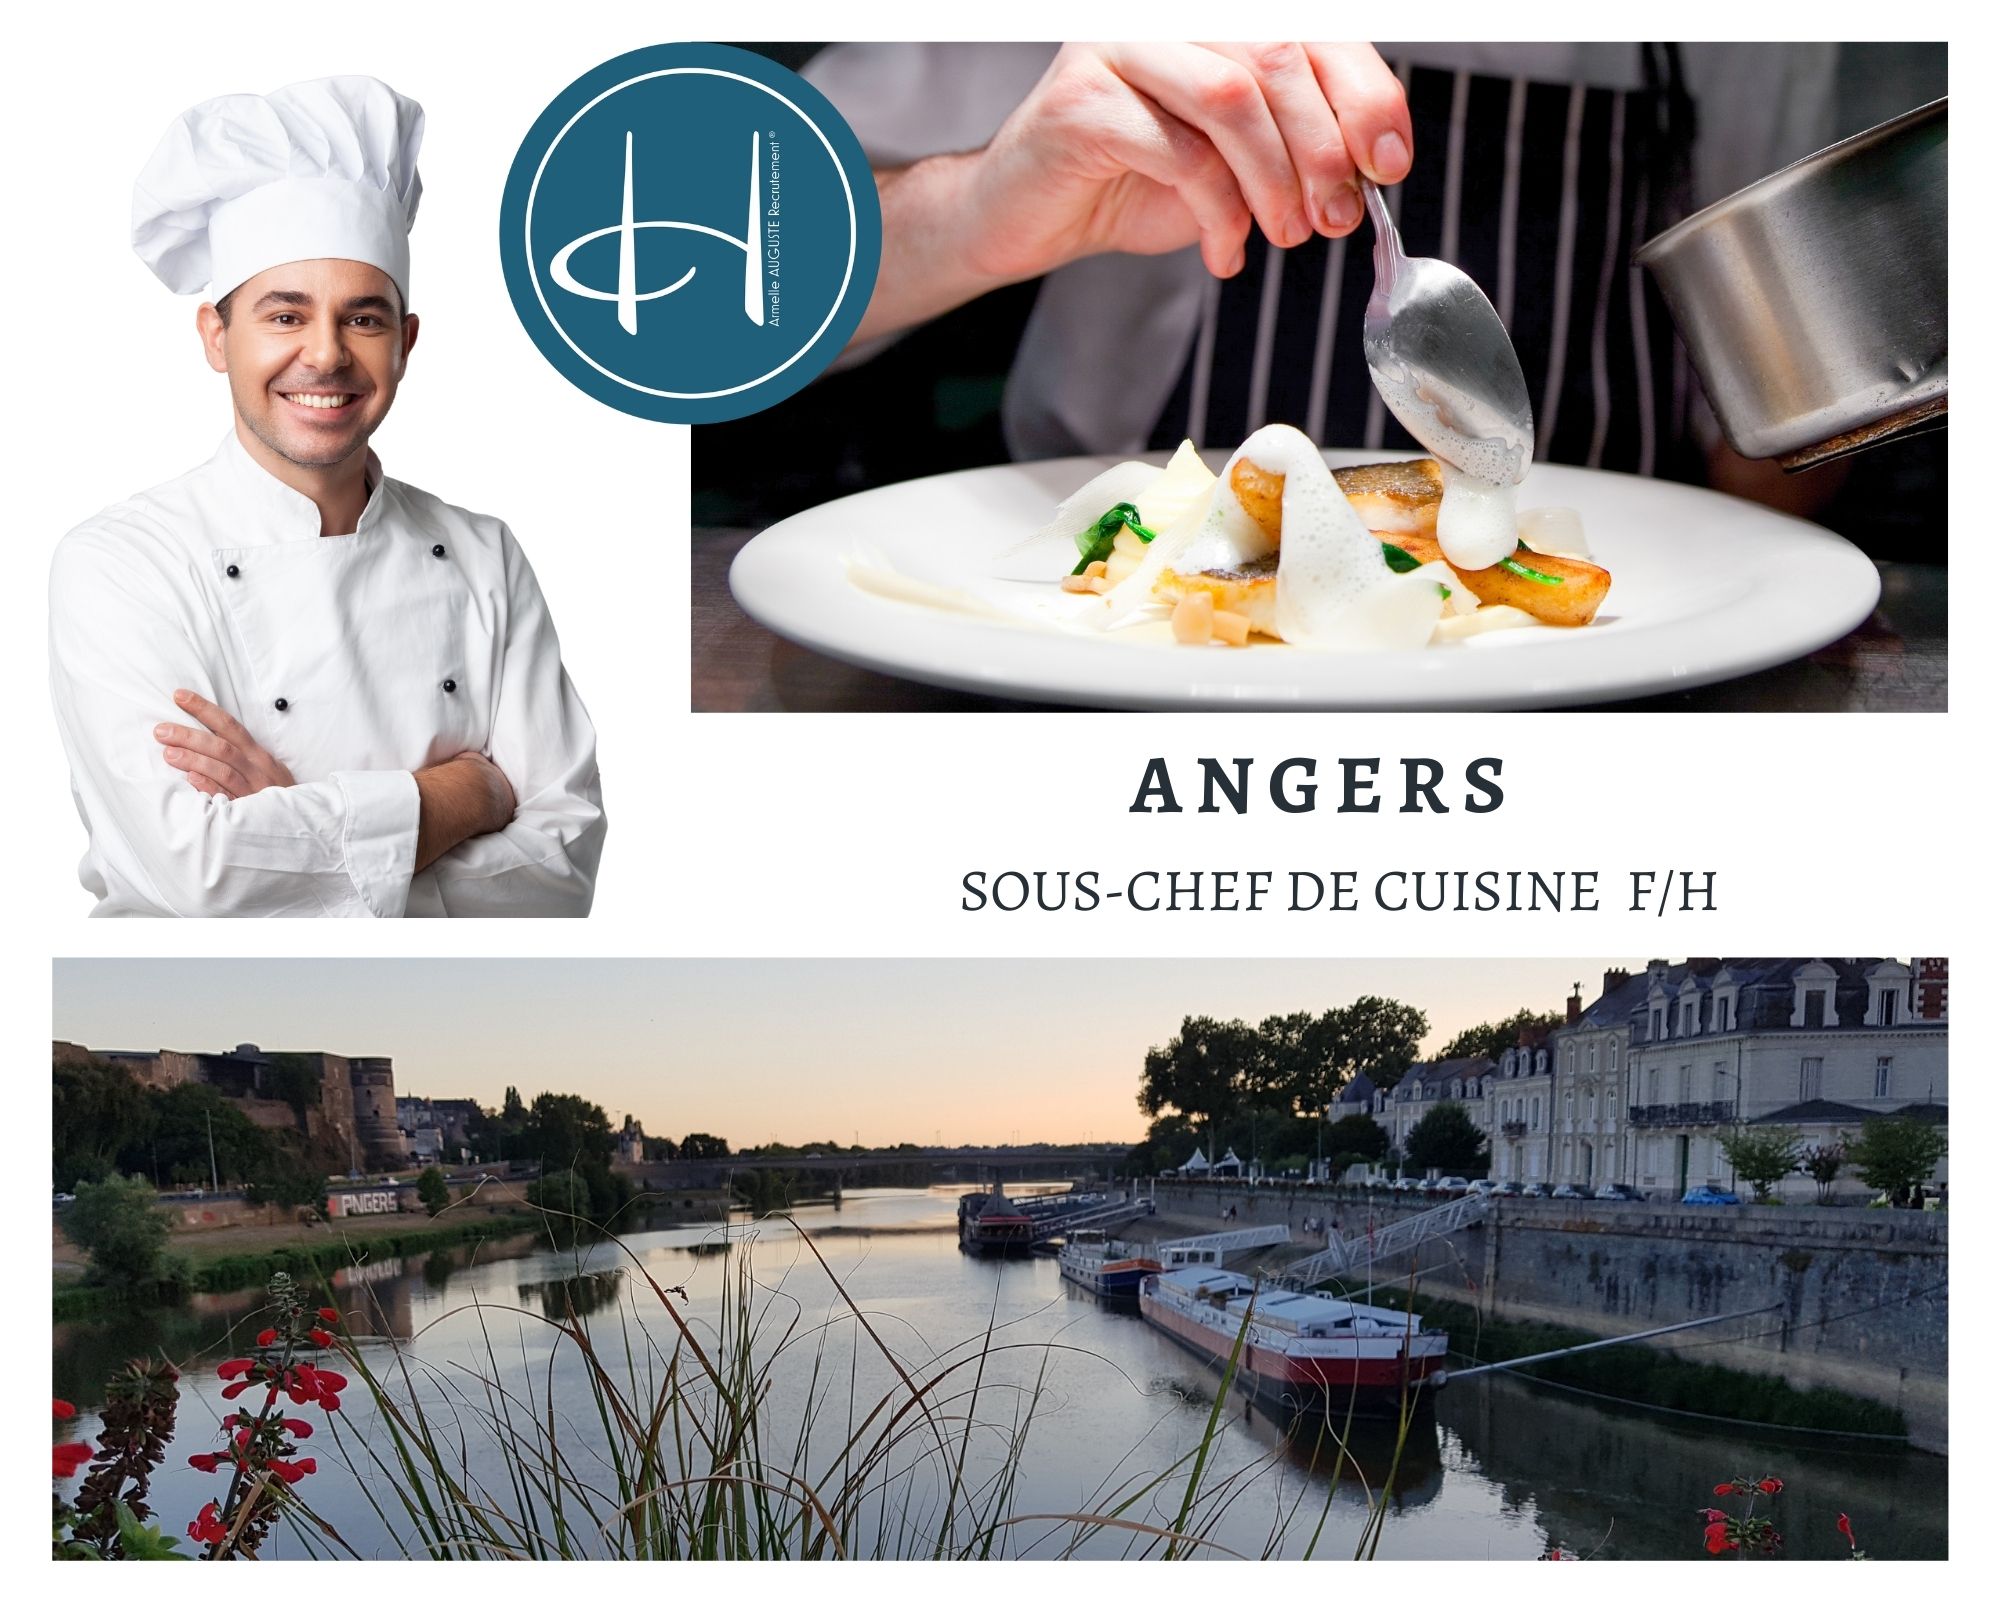 Recrutement: Second de cuisine château hôtel Angers F/H chez Armelle AUGUSTE Recrutement® à Angers